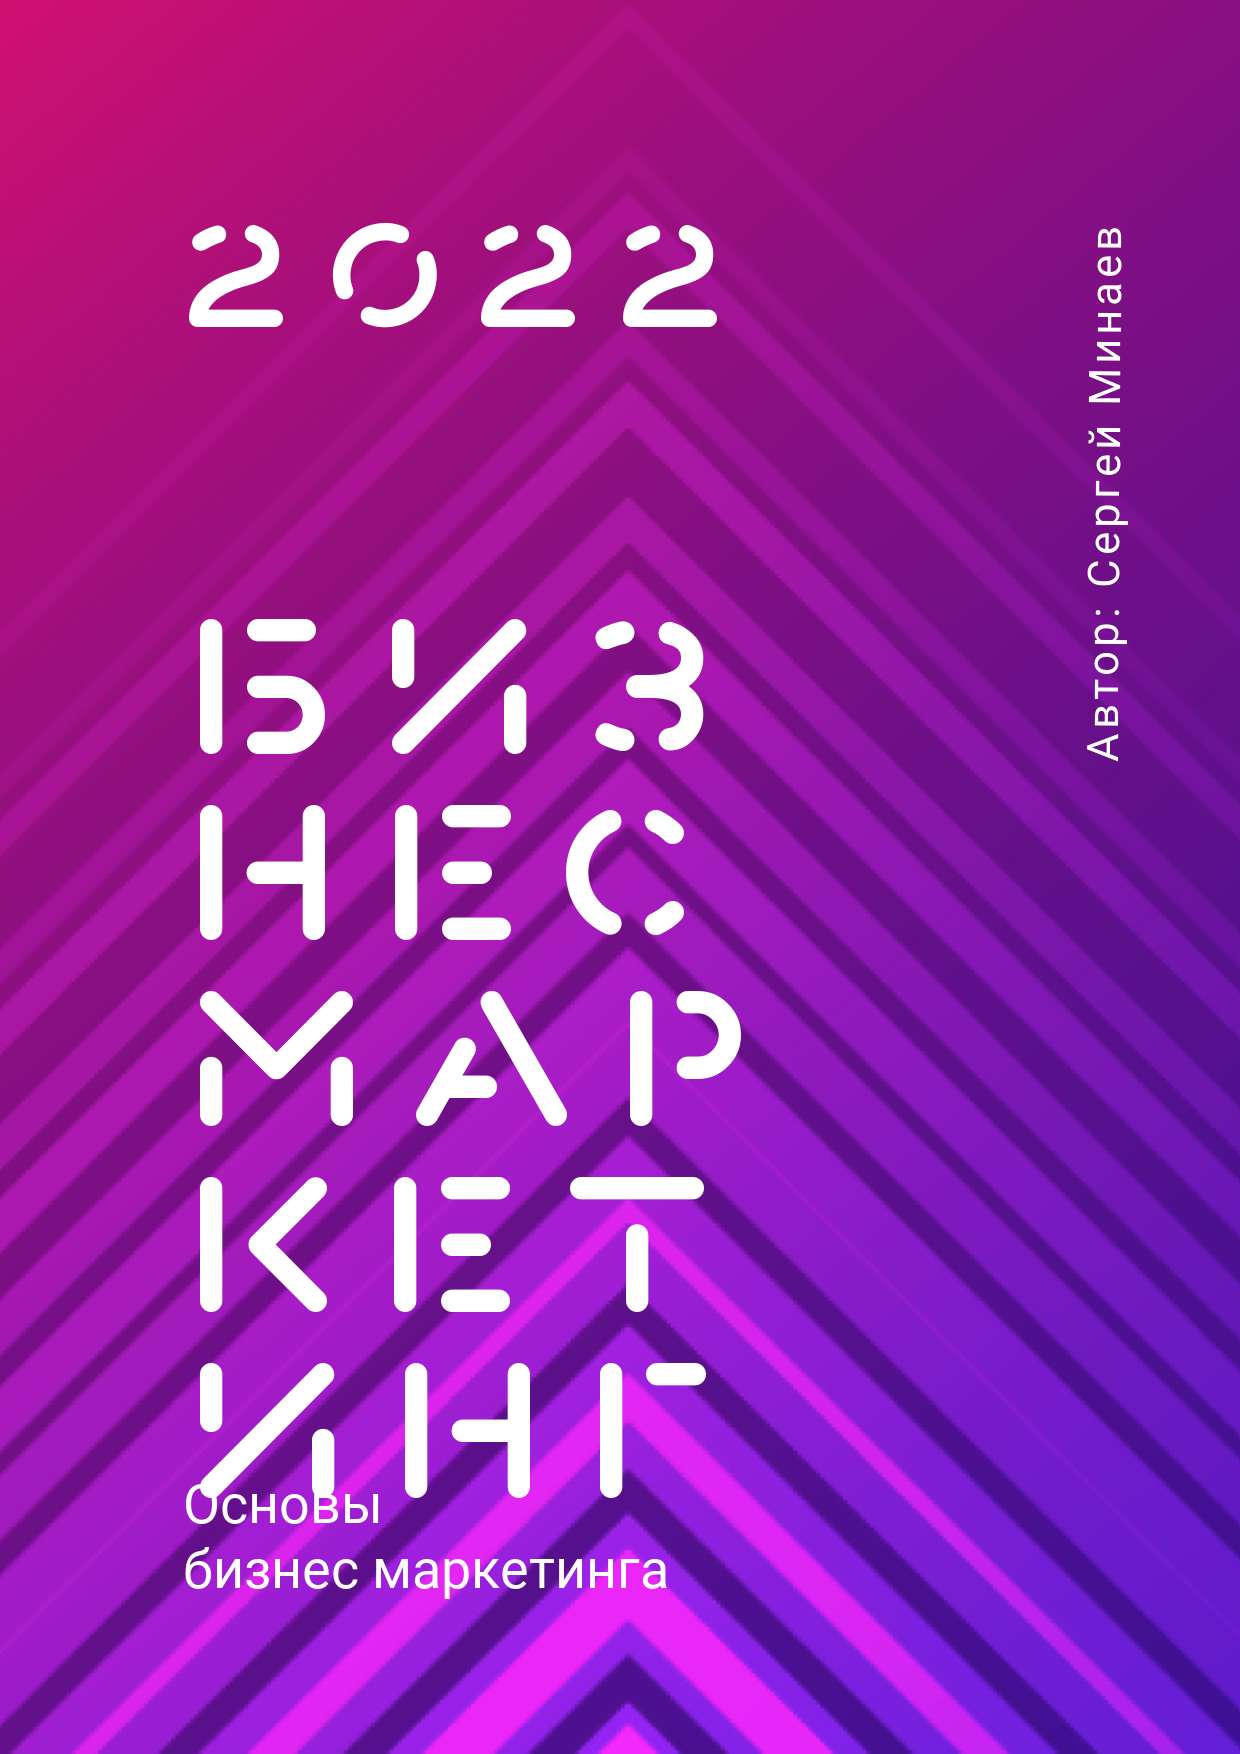 Неоновая розово-фиолетовая обложка для презентации на тему бизнеса и маркетинга